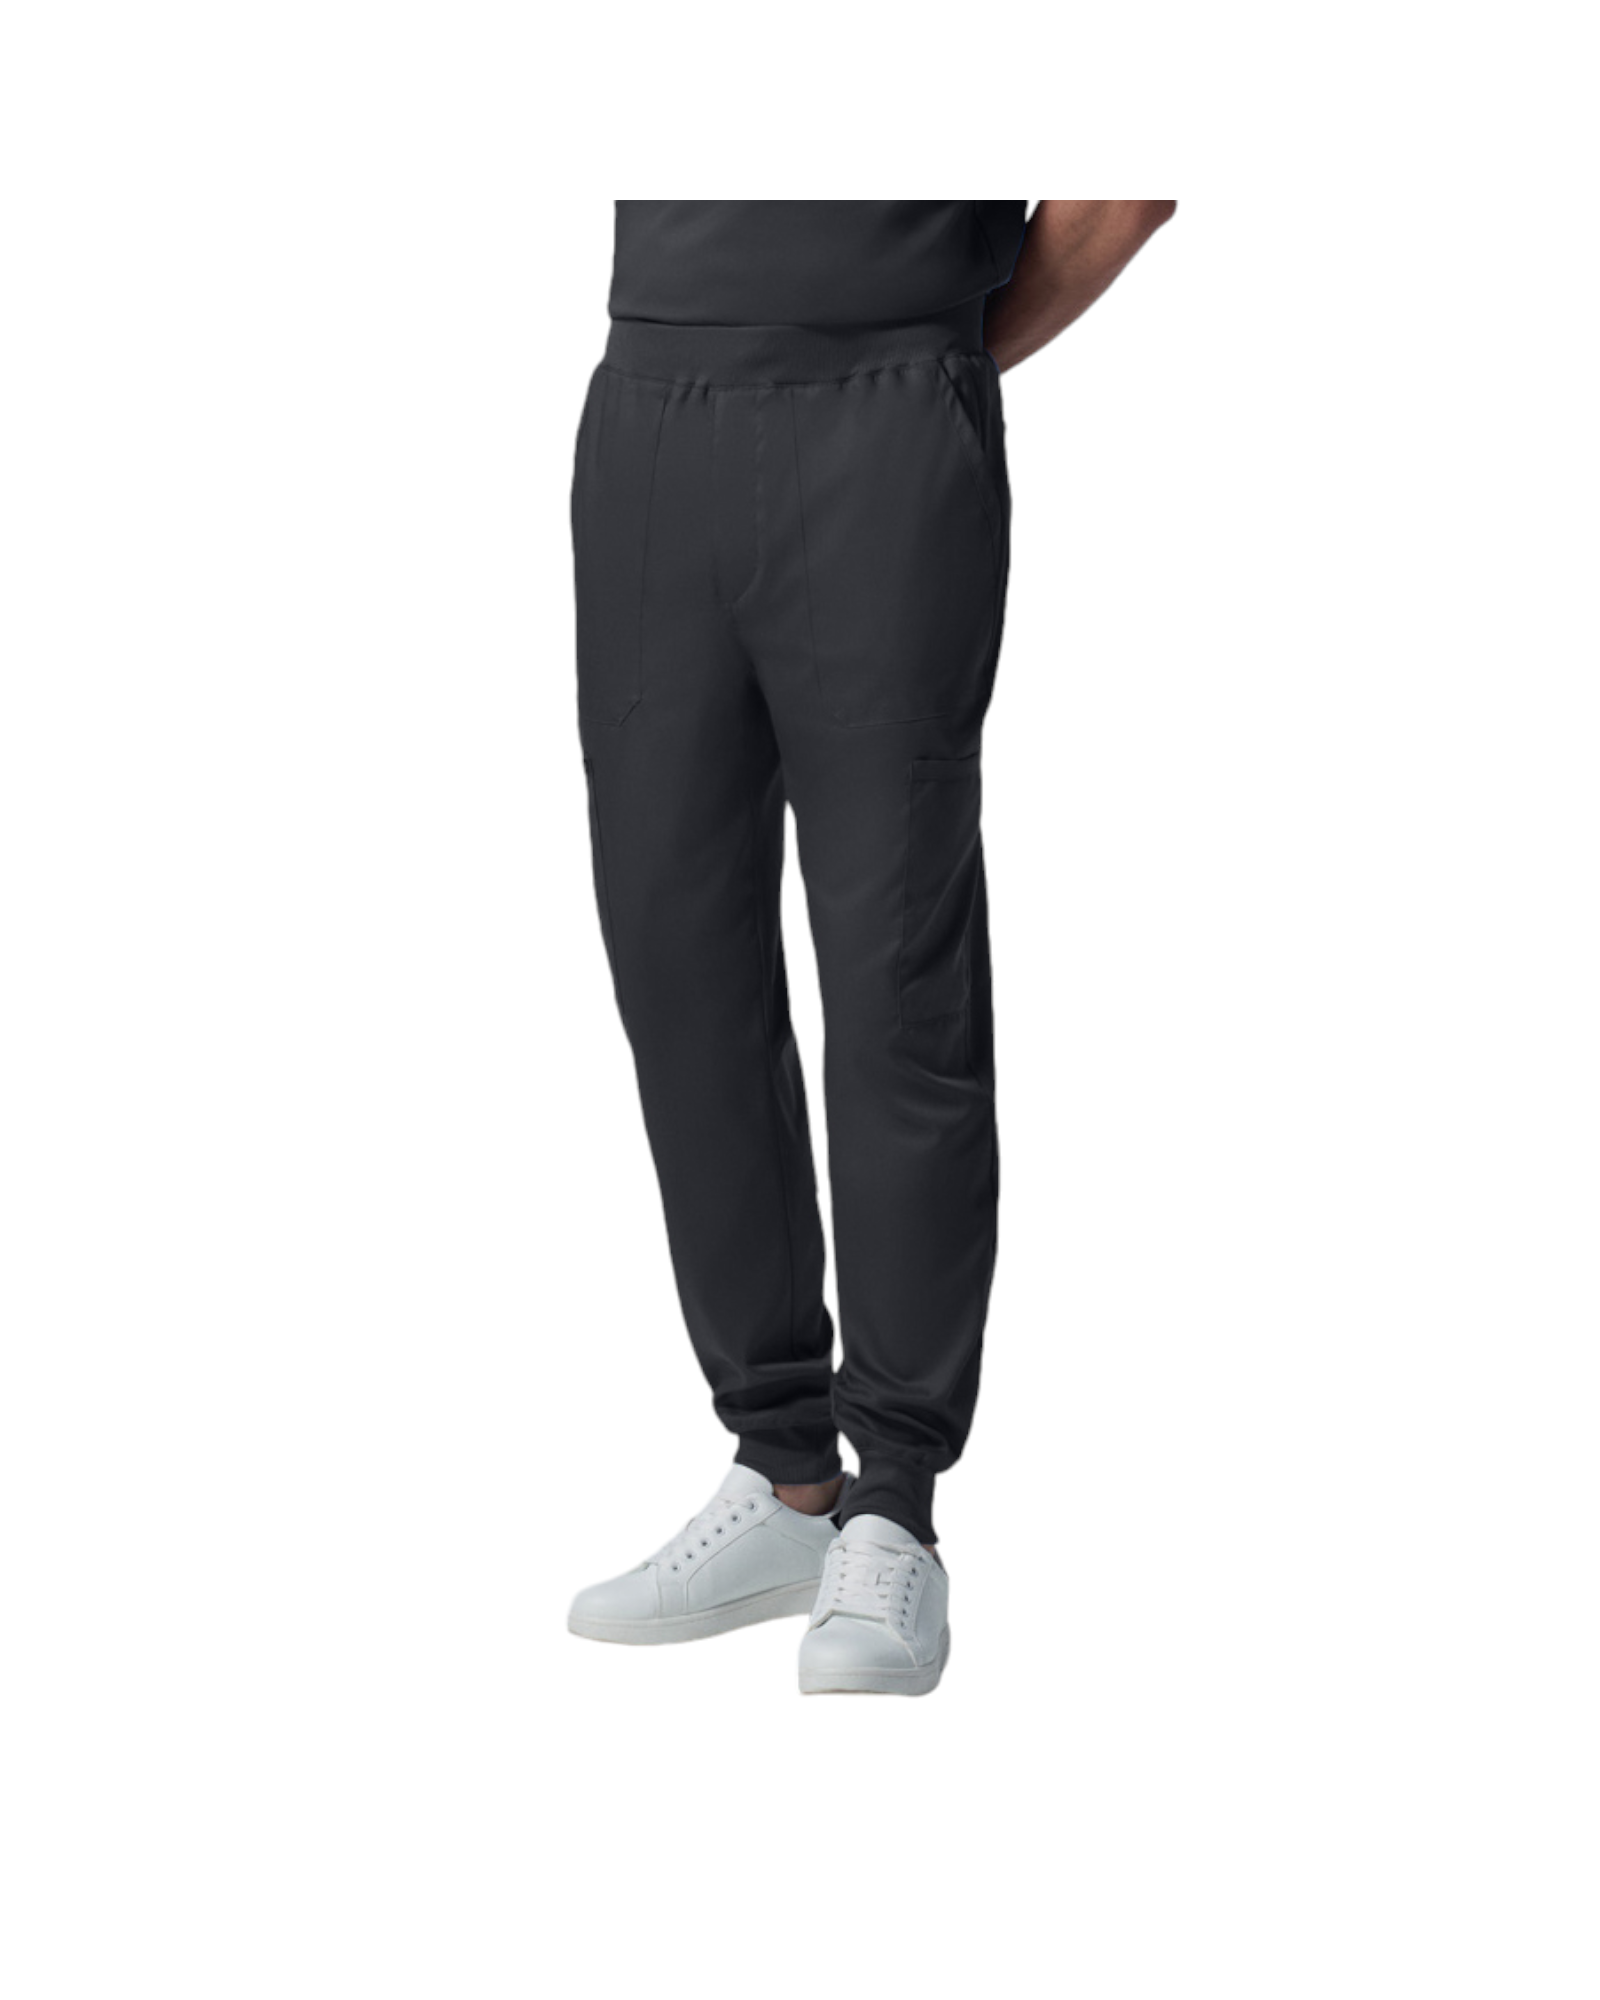 Pantalon jogger pour hommes Landau Proflex #LB407 OS couleur Pewter